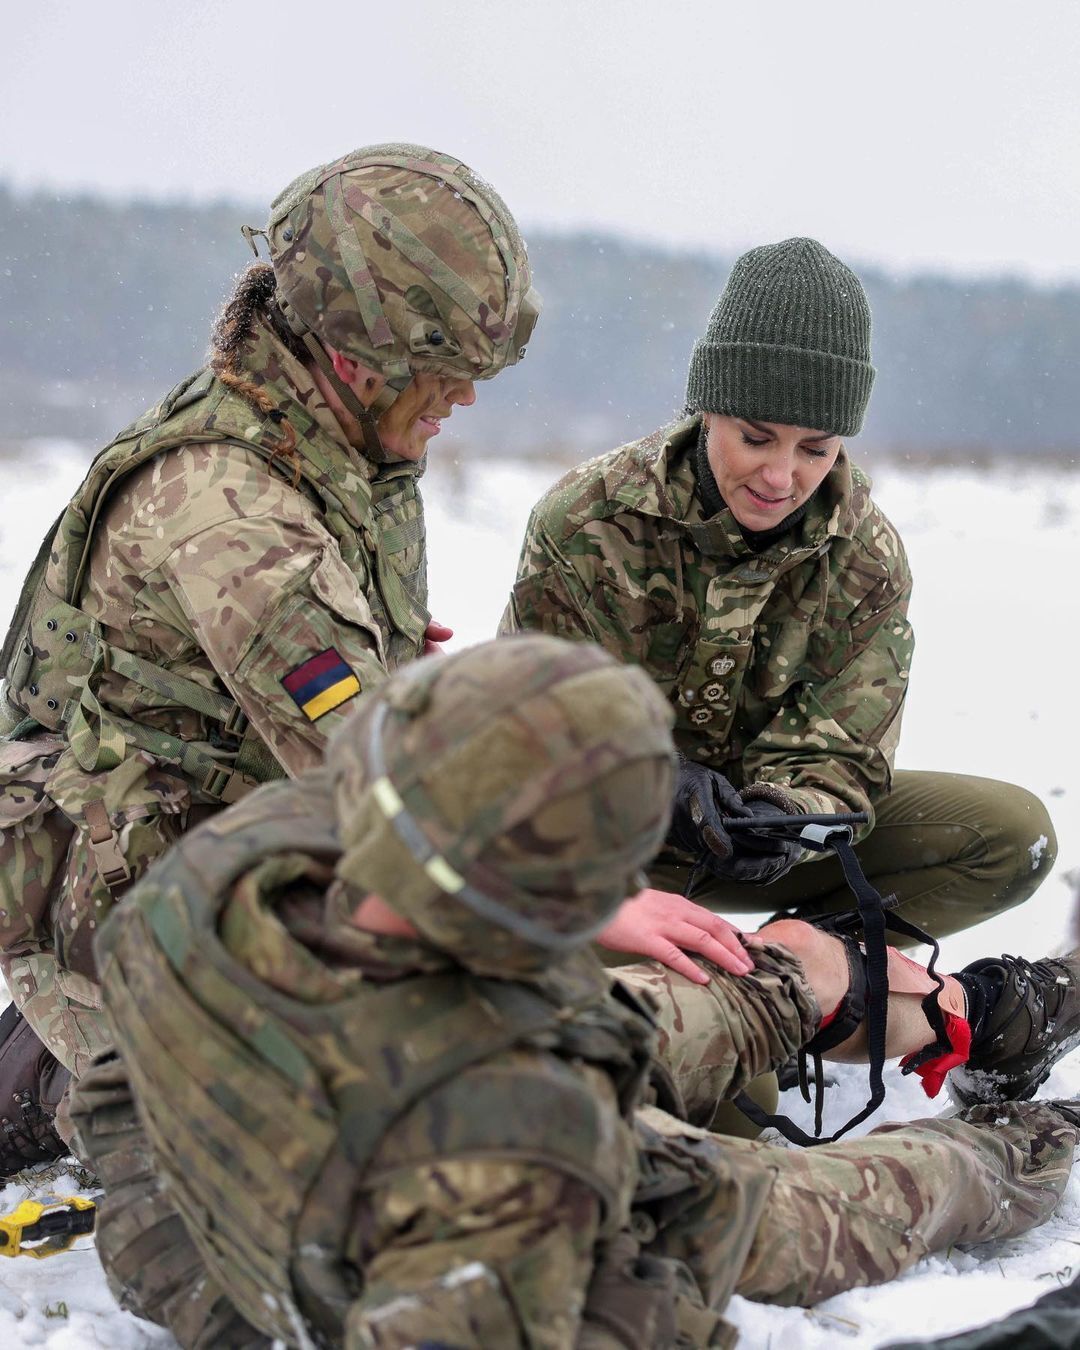 Кейт Миддлтон в милитари посетила полигон, где тренируют украинских военных. Фото